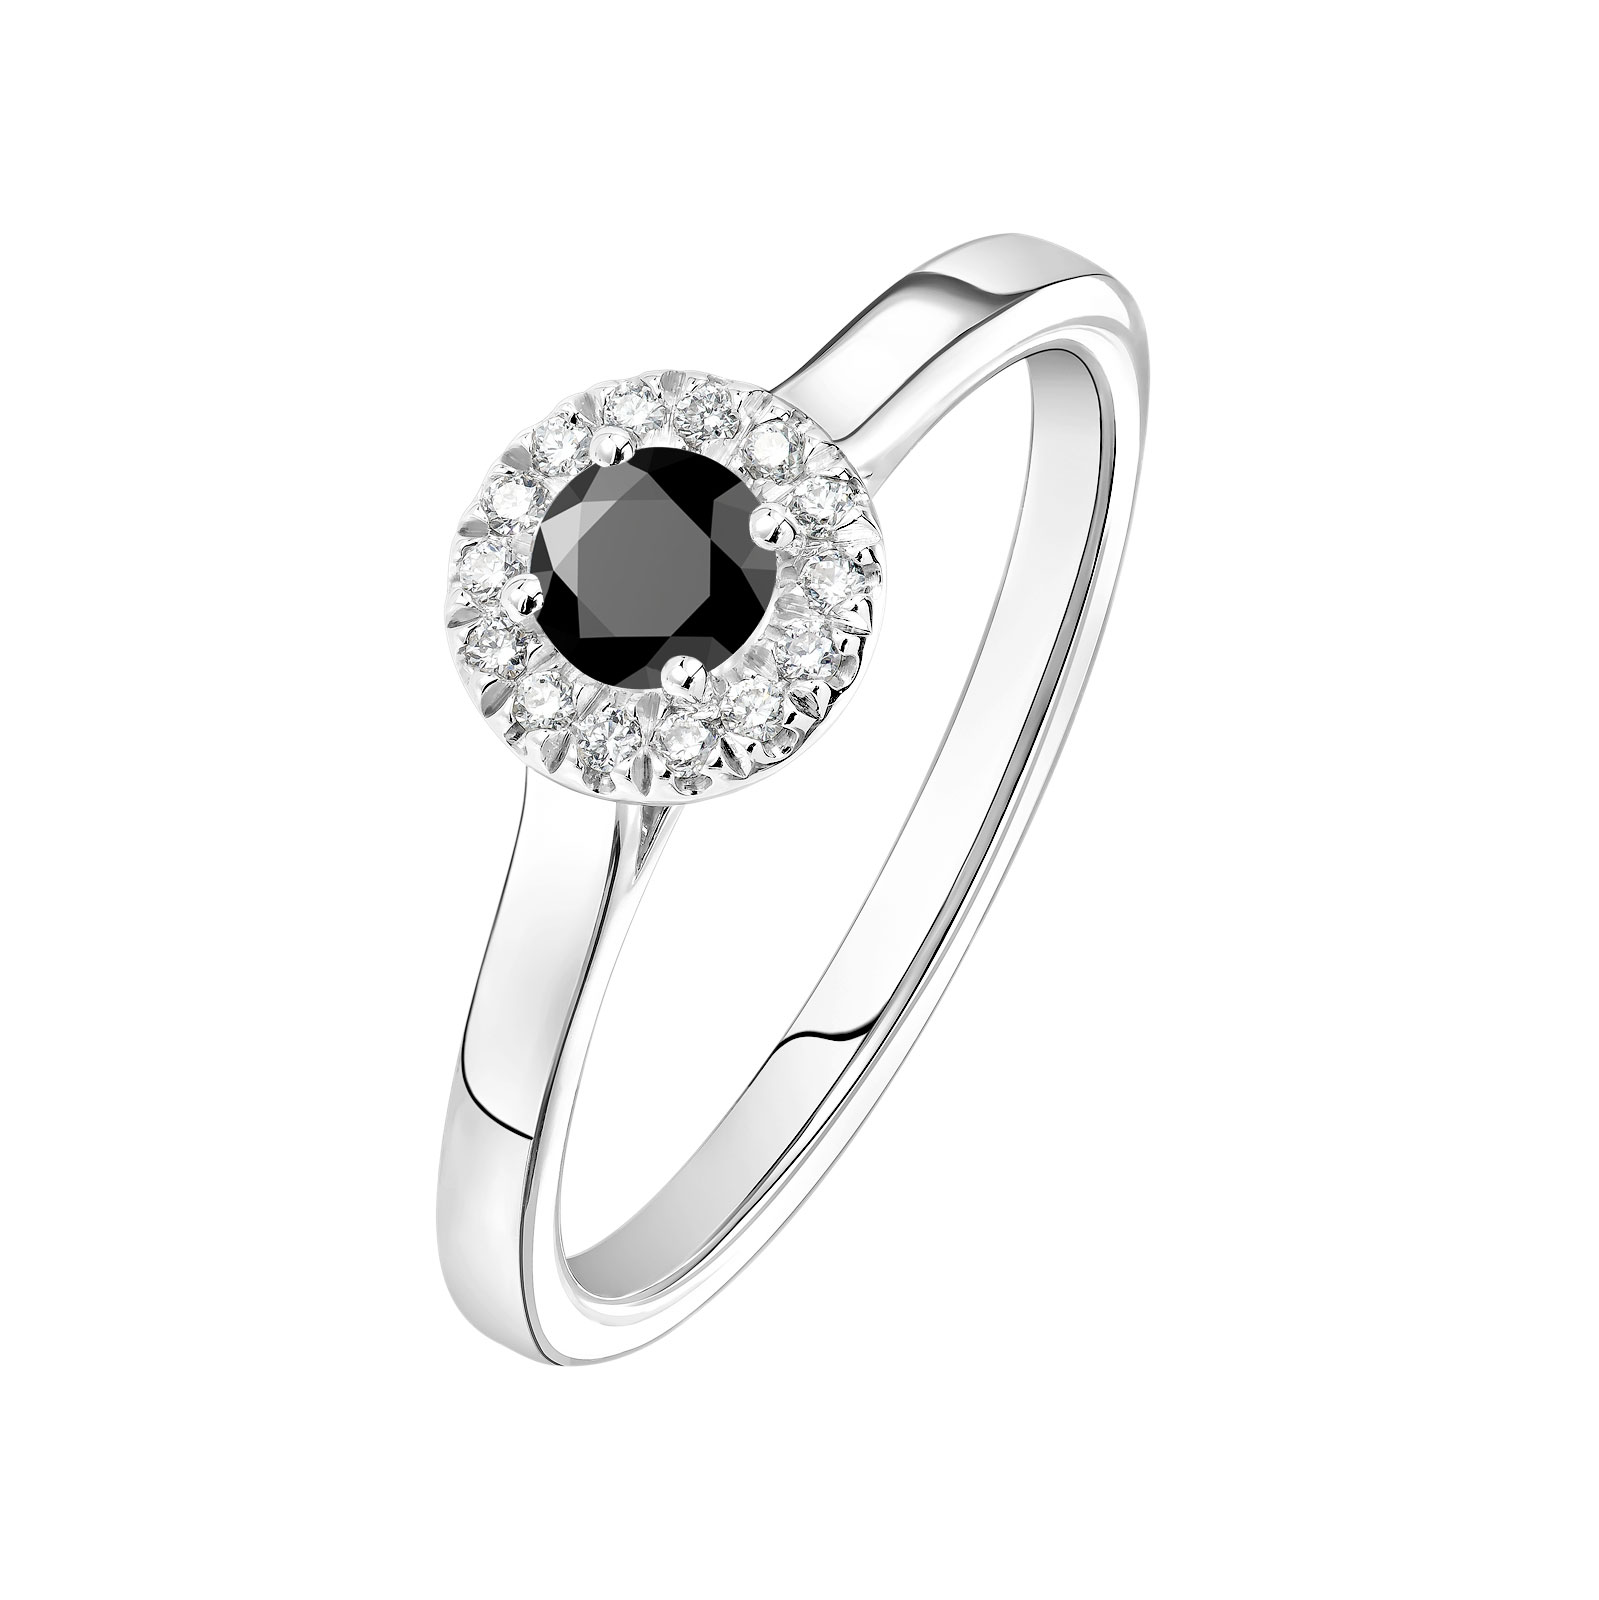 Bague Or blanc Spinelle noir et diamants Rétromantique S 1